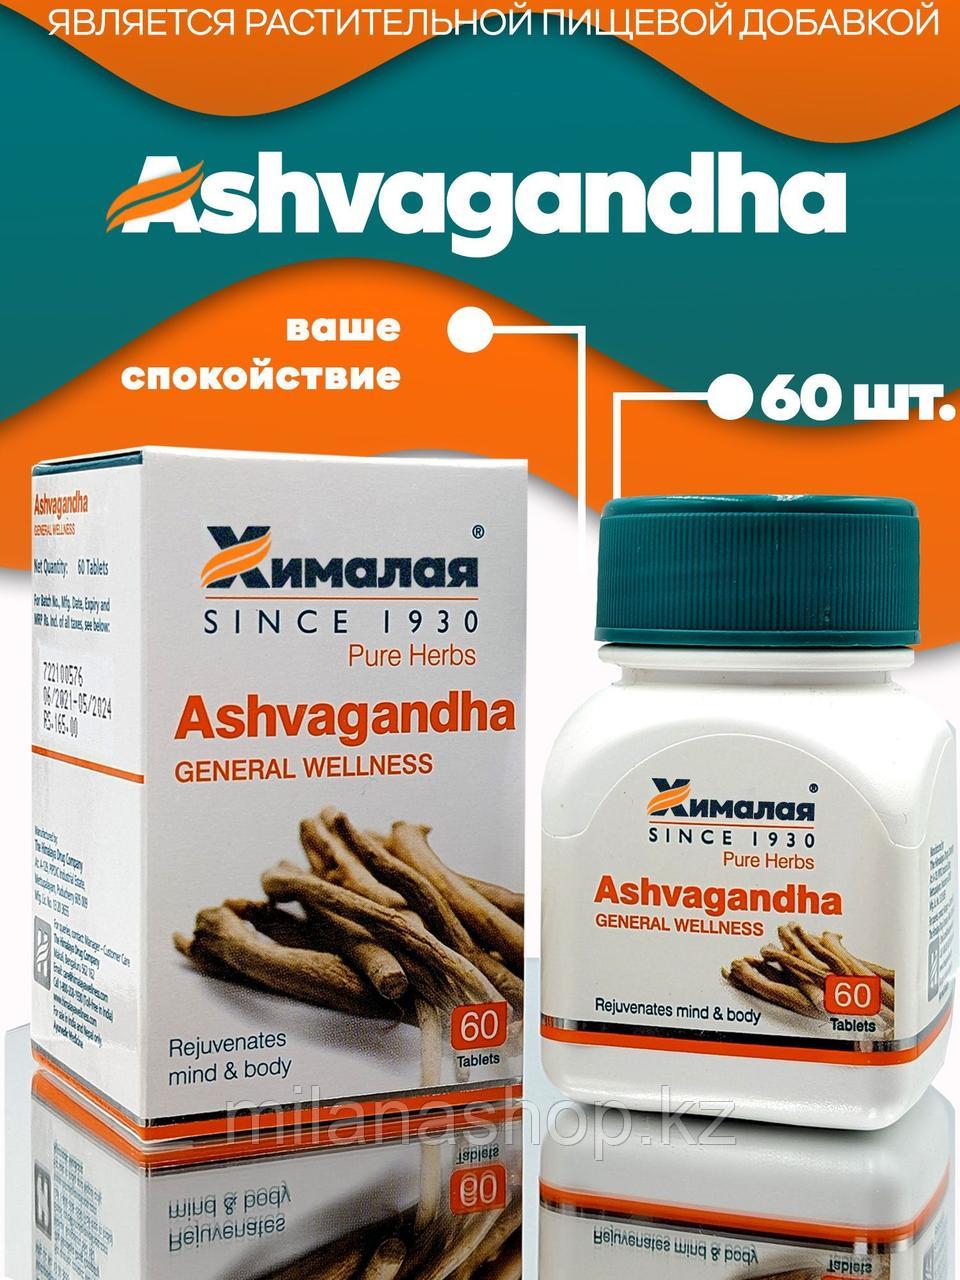 Ашвагандха Хималая ( Ashvagandha Himalaya ) средство снятия стресса, усталости и бессонице, 60 таб